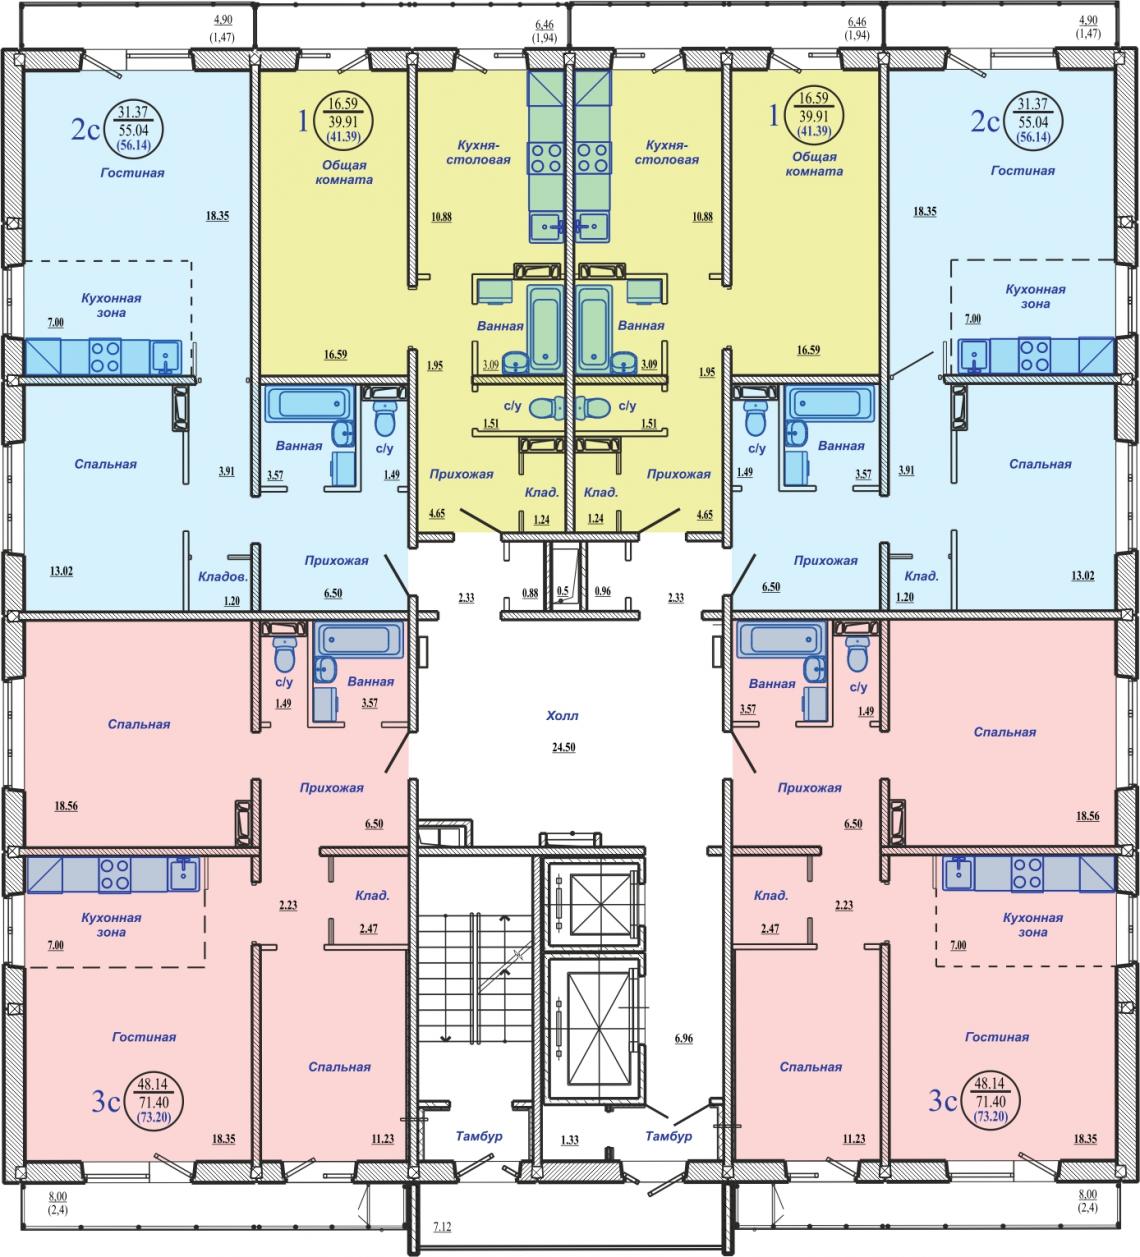 Схема планировки 18-ти этажного дома